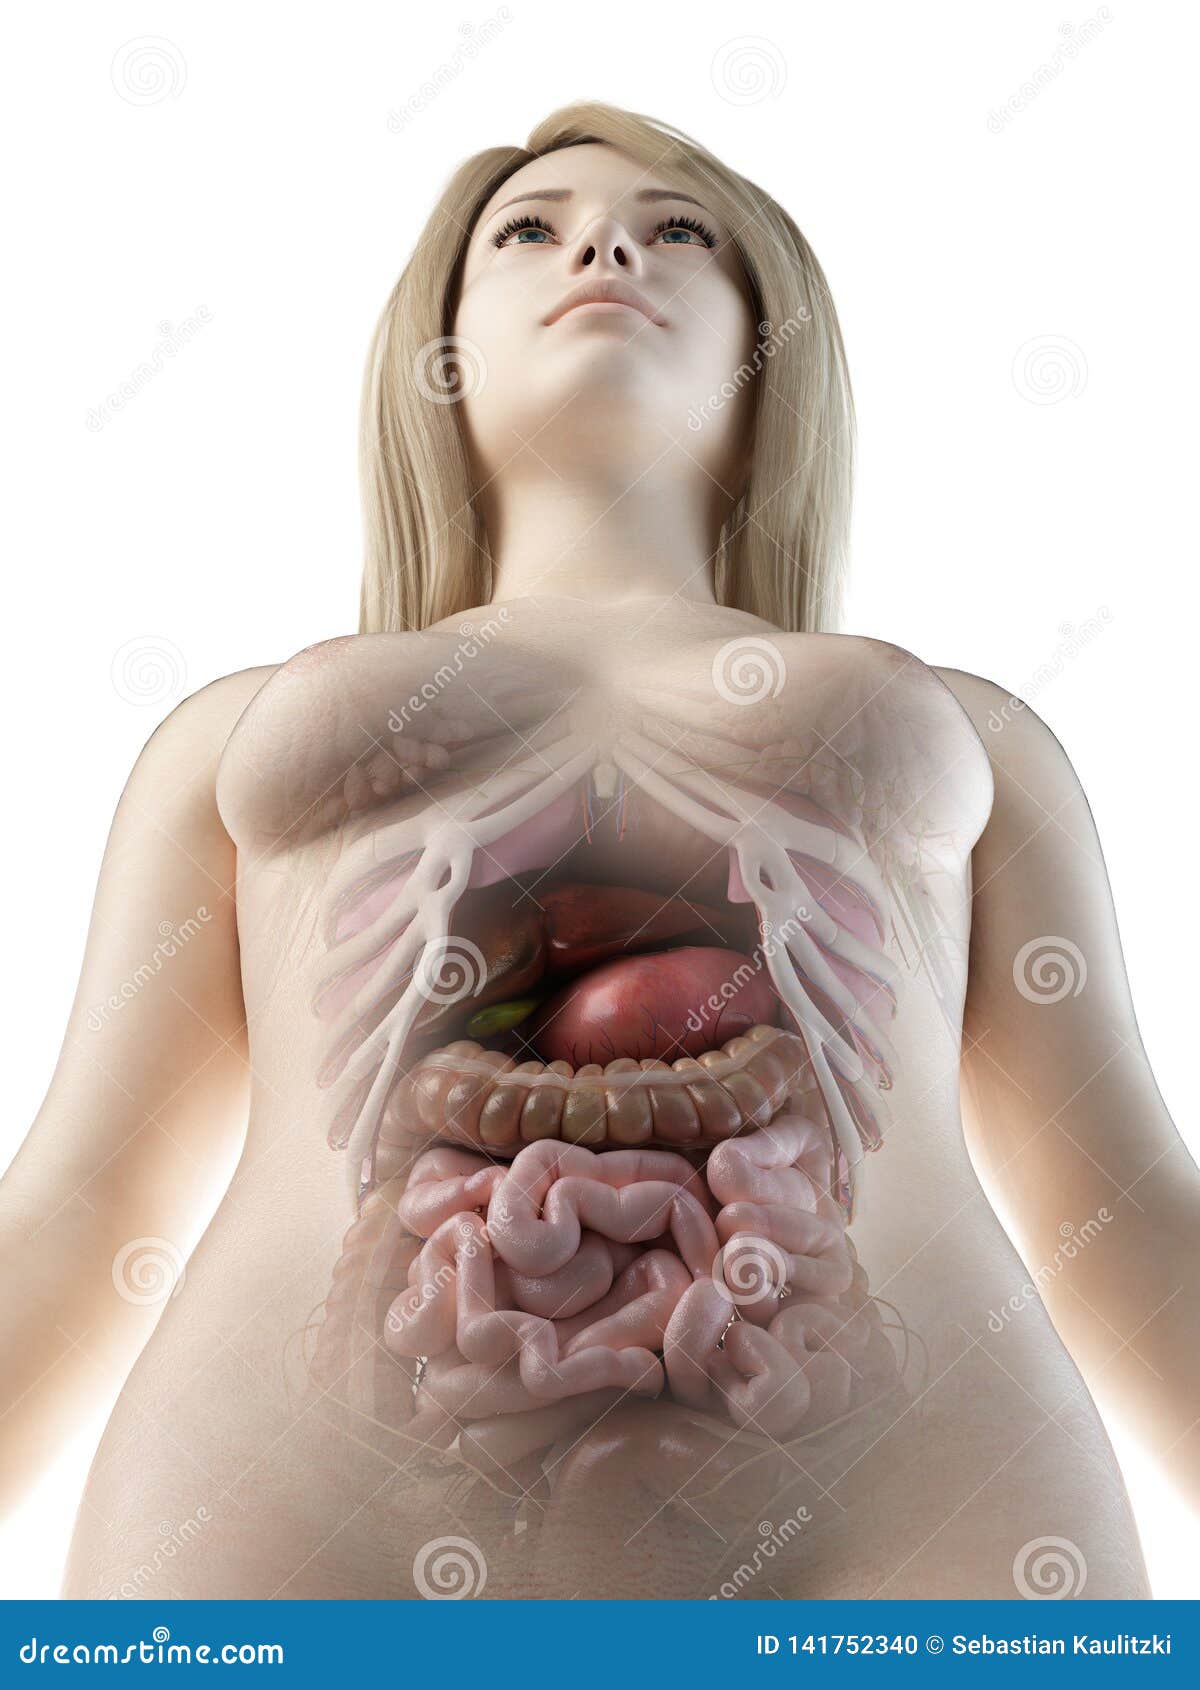 a females abdominal organs